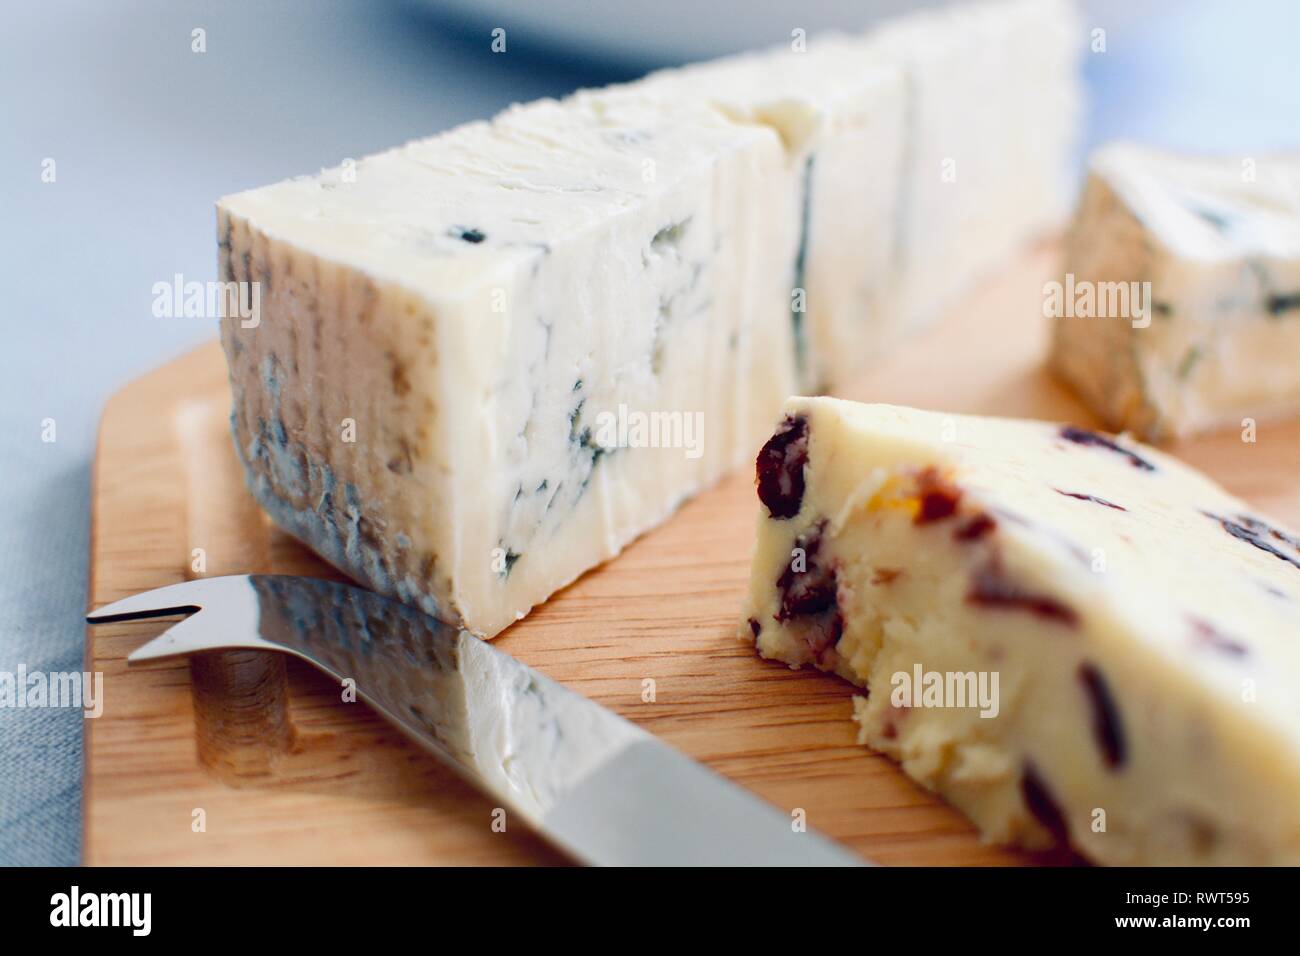 Vue rapprochée d'un plateau de fromage avec un couteau à fromage servi sur une planche en bois Banque D'Images